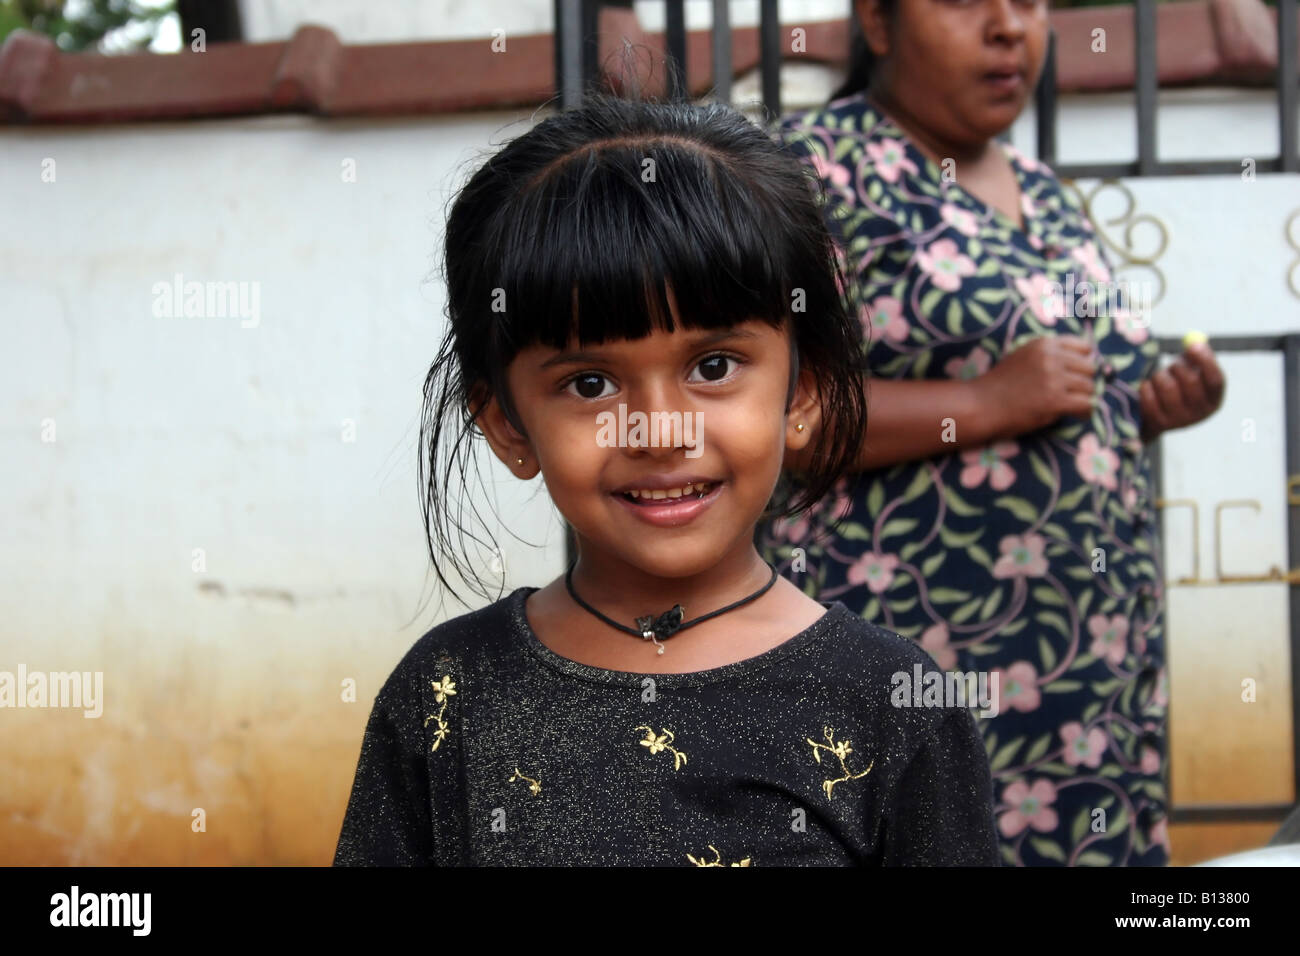 Nach der Tsunami die Küstengebiete von Sri Lanka schlug ist dieses junge Mädchen noch in der Lage zu Lächeln. Stockfoto